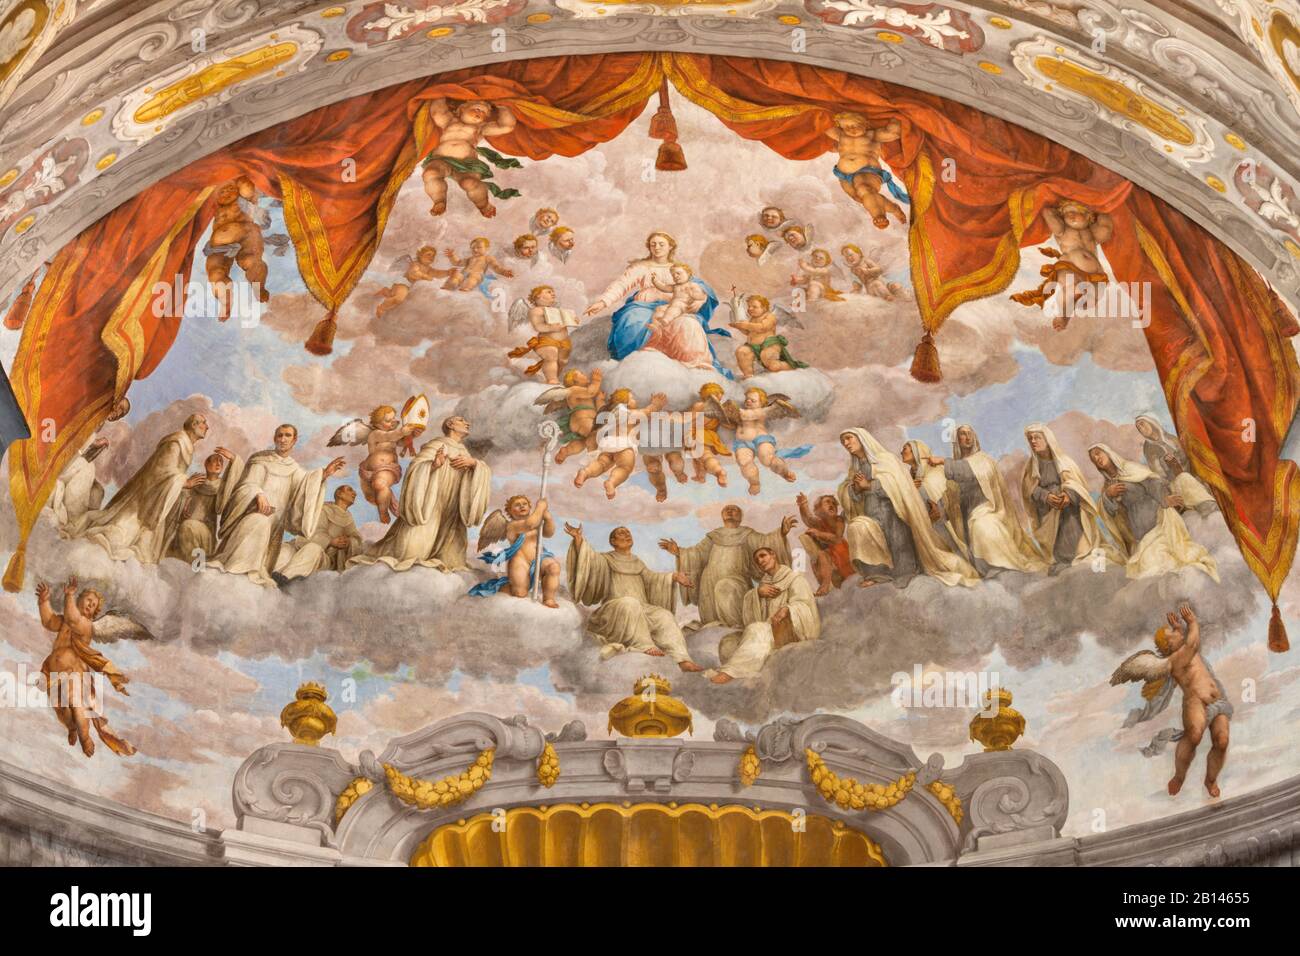 FERRARA, ITALIE - 30 JANVIER 2020 : la fresque de Madonna parmi les saints bénédictins dans l'apsida de l'église Basilique di San Giorgio fuori le mura. Banque D'Images